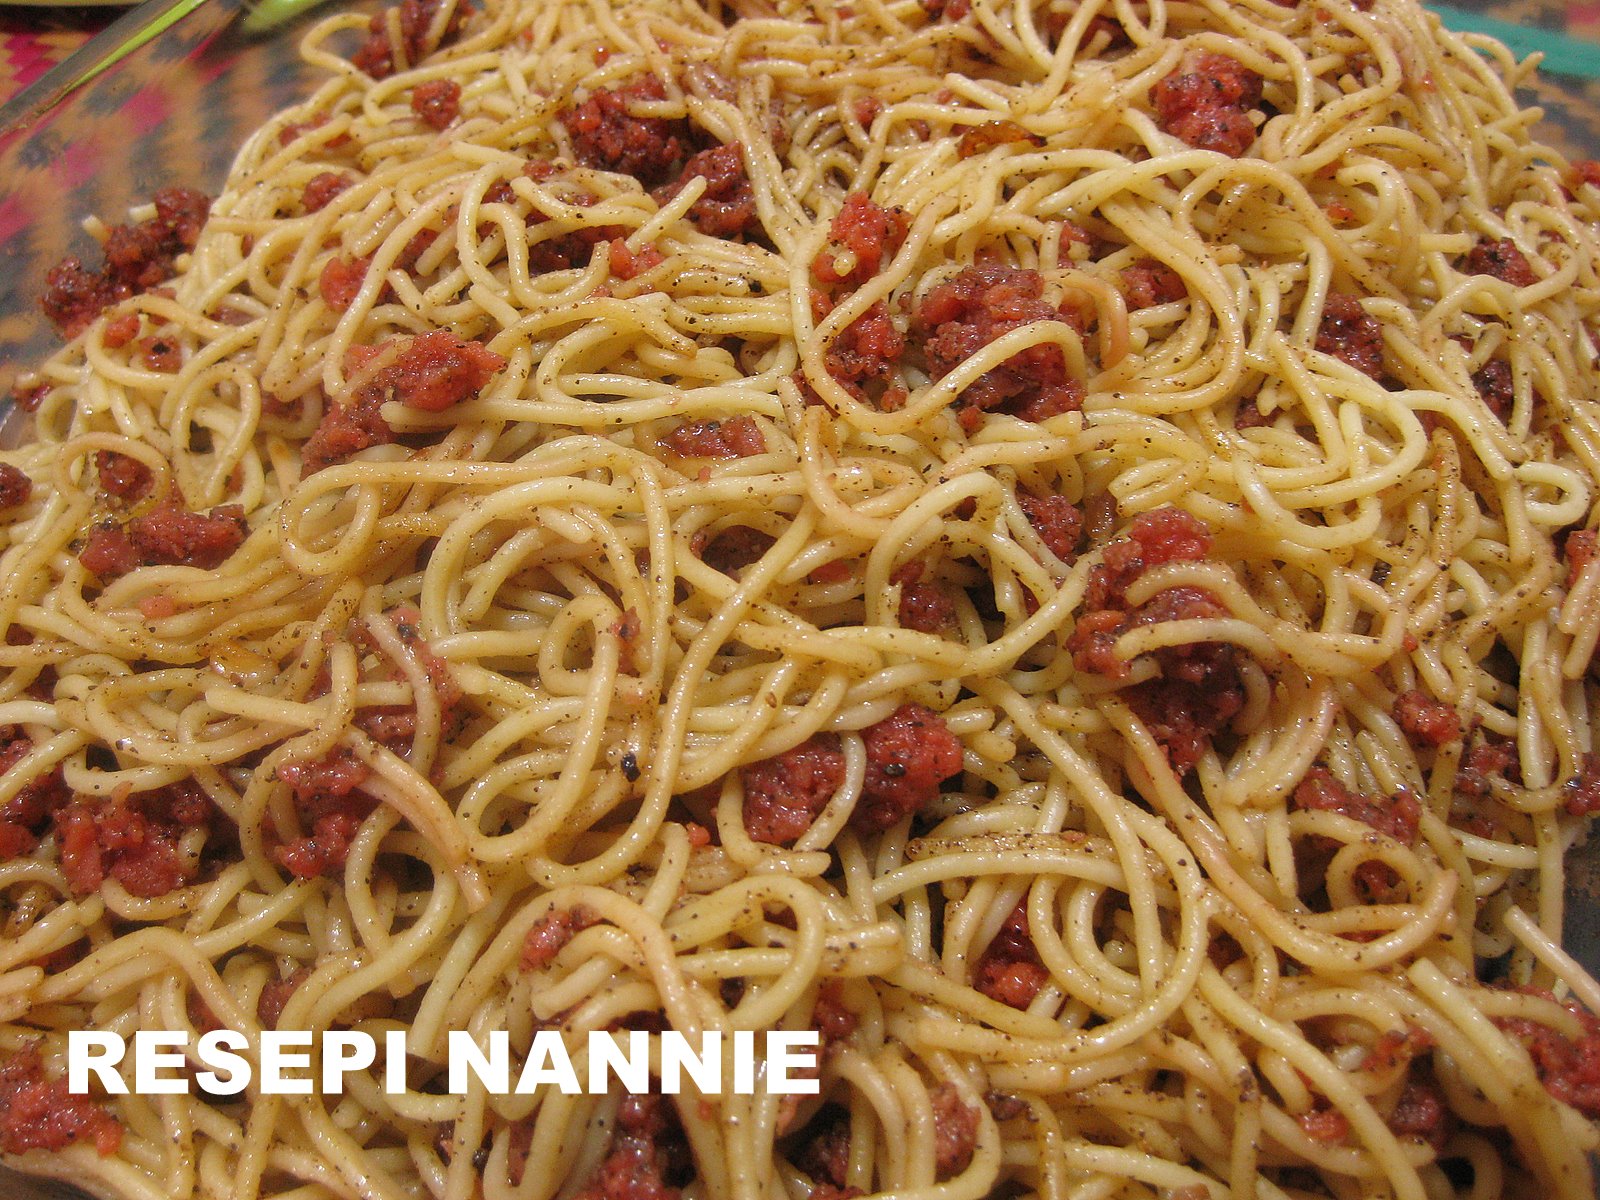 RESEPI NENNIE KHUZAIFAH: Spaghetti goreng lada hitam